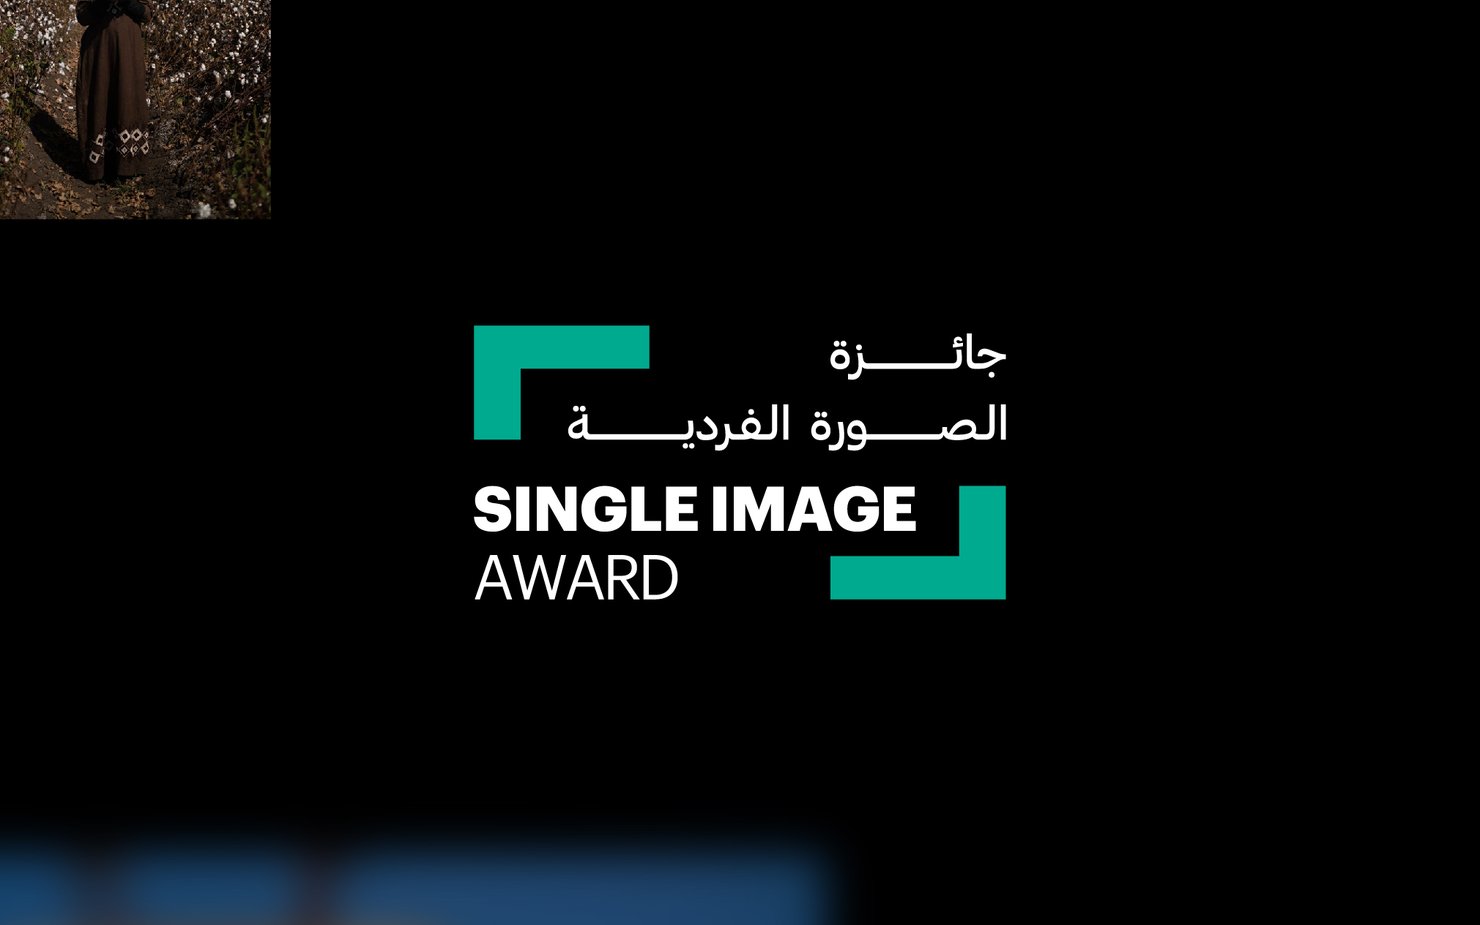 Single Image award